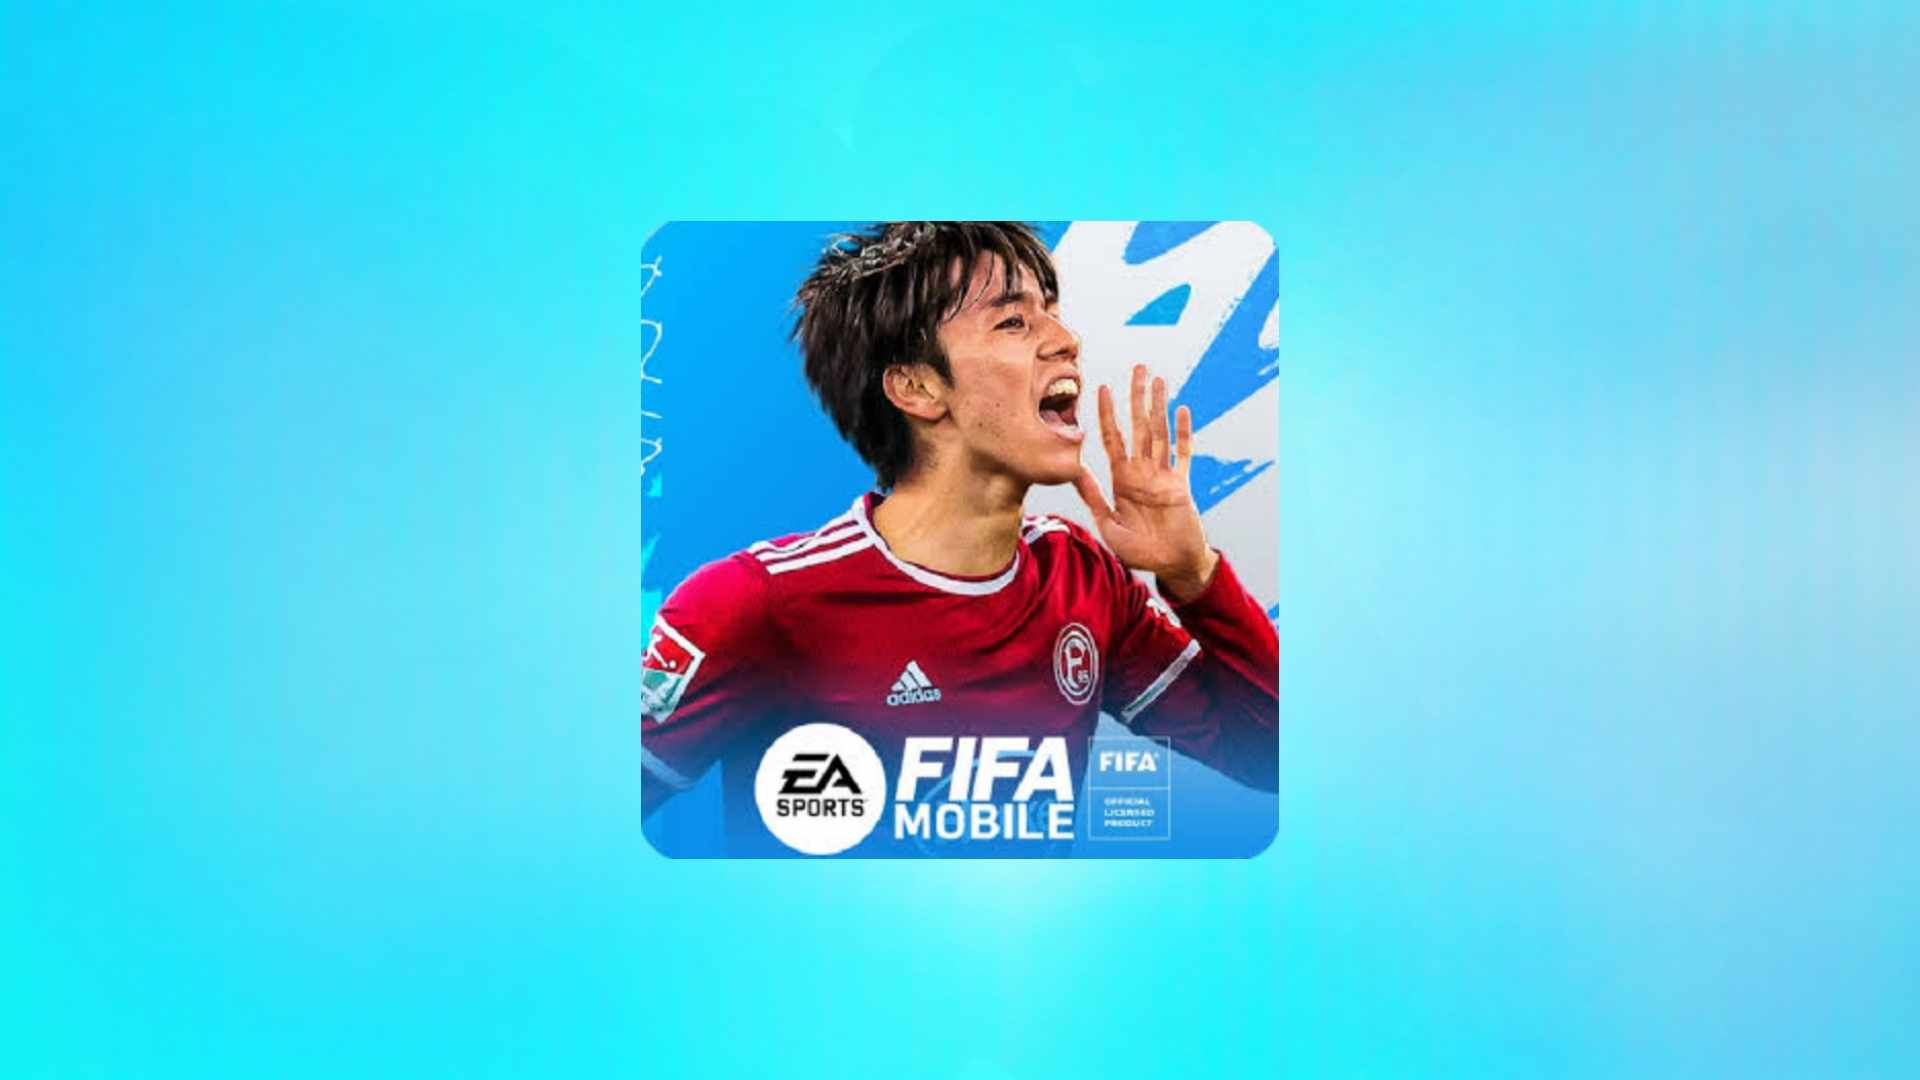 הורד את המשחק היפני FIFA 24 Mobile JP הגרסה האחרונה 2024